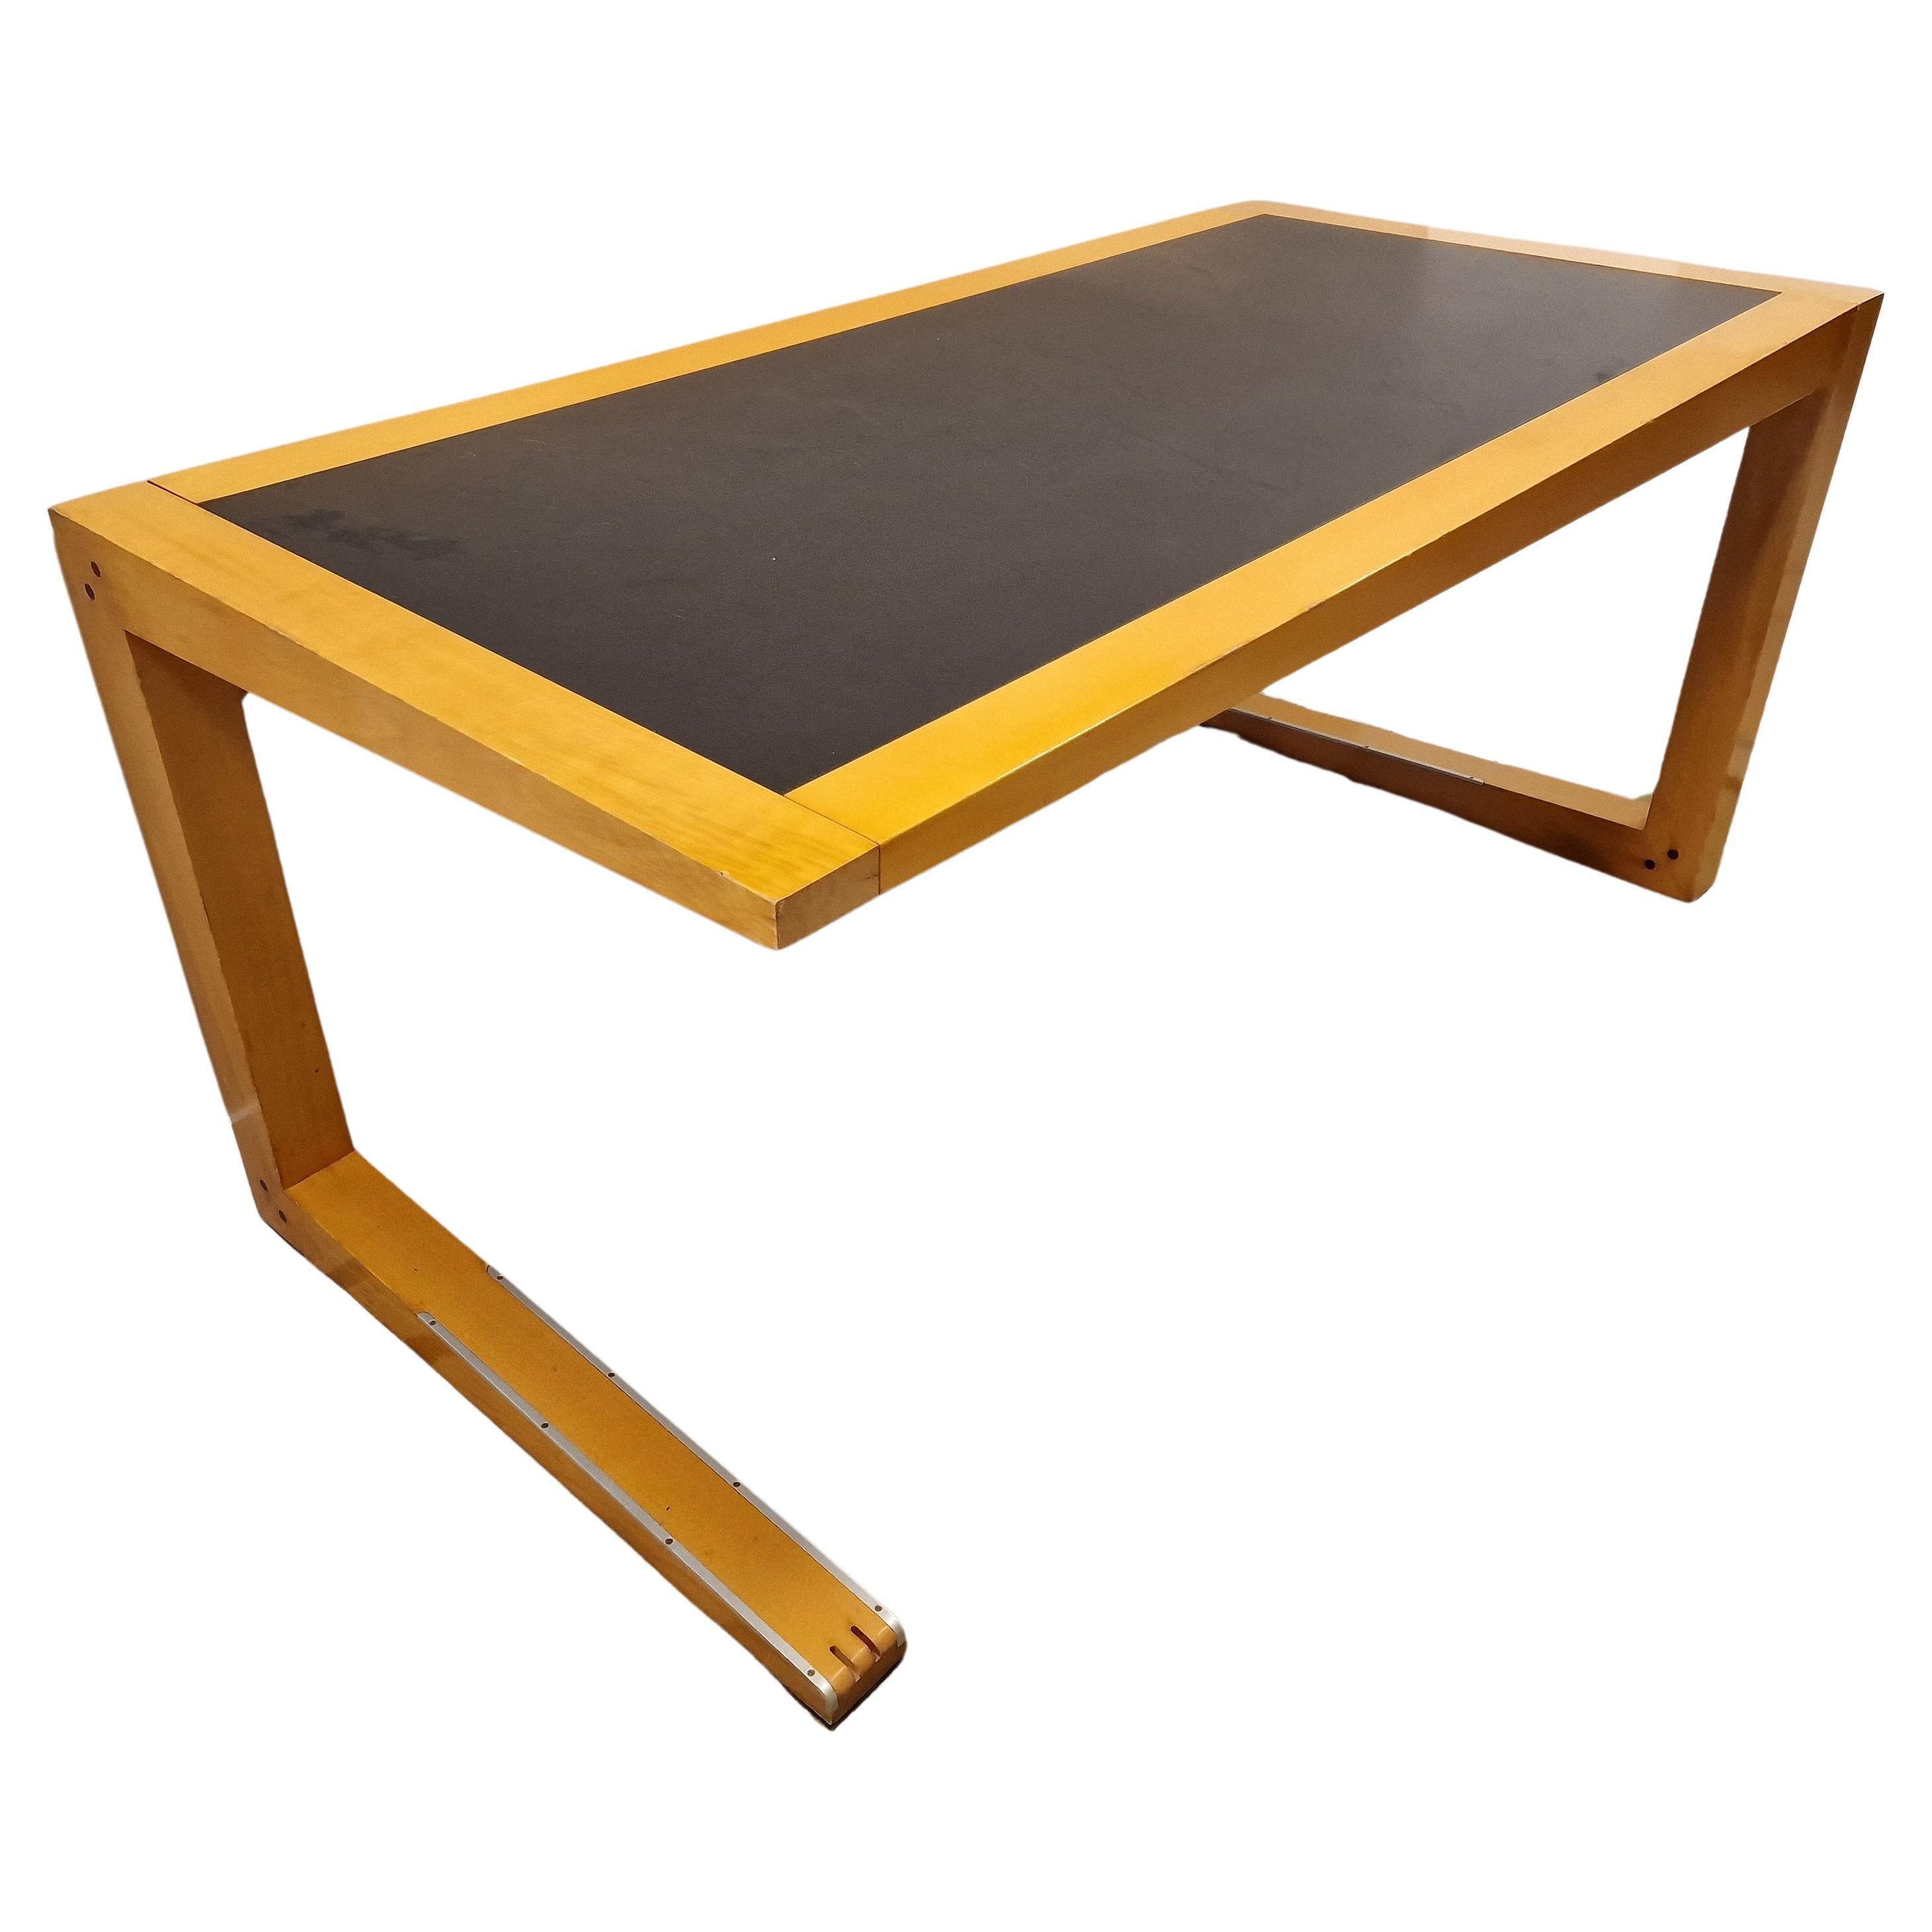 Massimo Scolari Italian Desk table for Giorgetti, black rubber wood